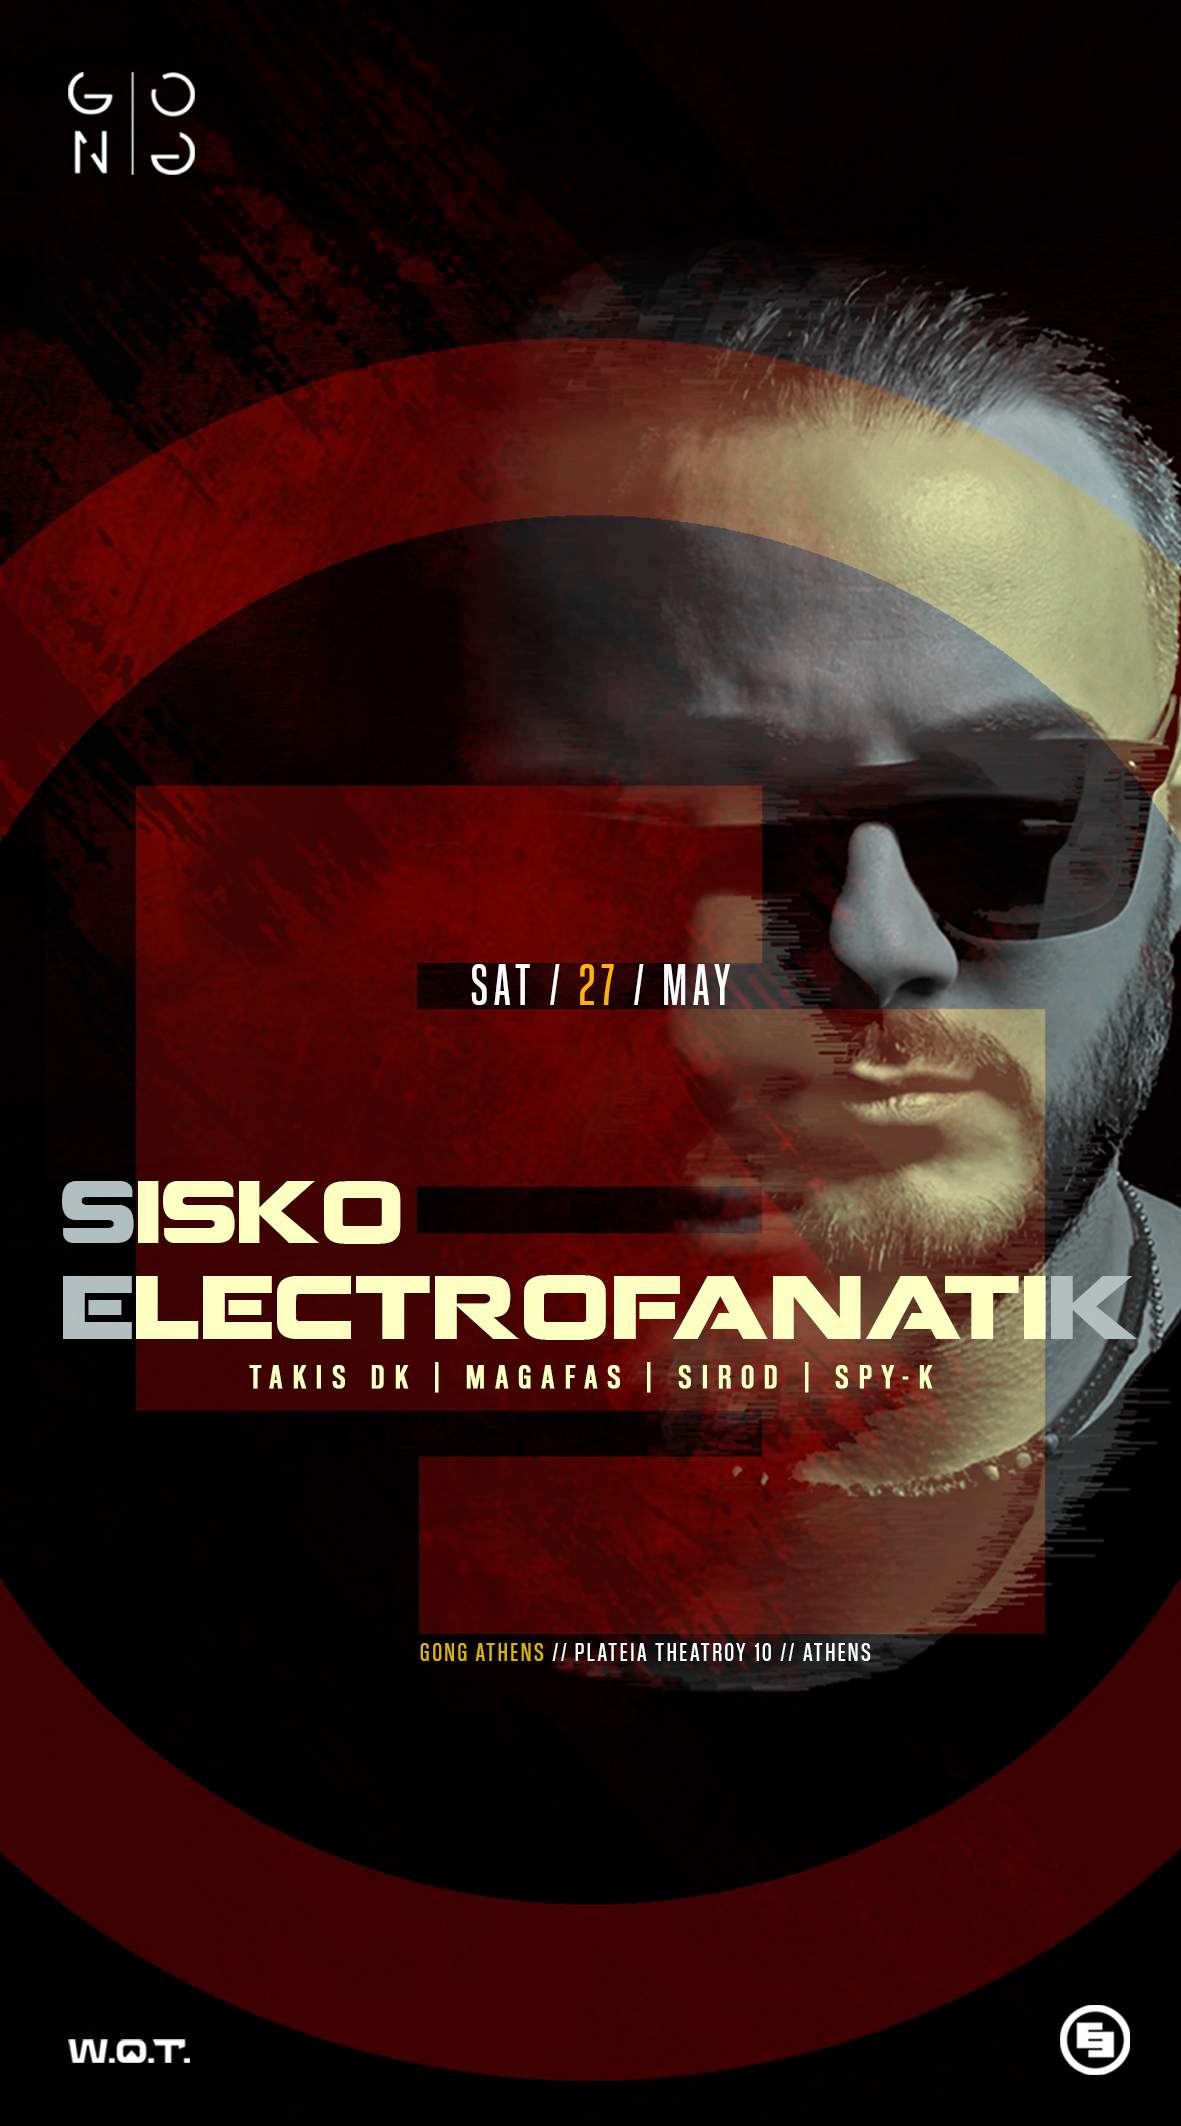 Sisko Electrofanatik - 27th of May at Gong Athens - フライヤー表